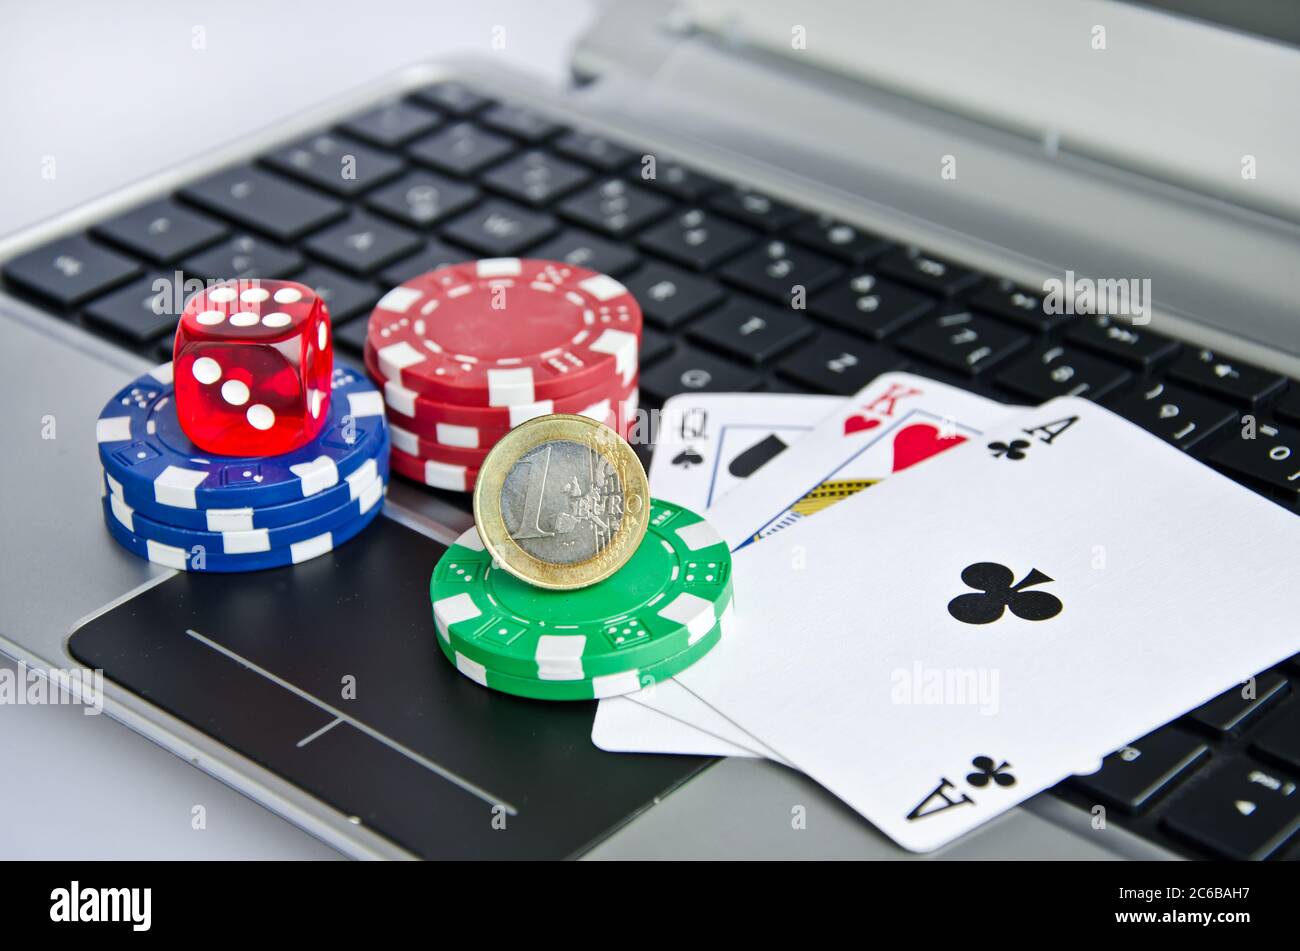 Spielkarten, Casino-Chips und Euro-Münzen auf einer Laptop-Tastatur  symbolisieren Online-Glücksspiel Stockfotografie - Alamy